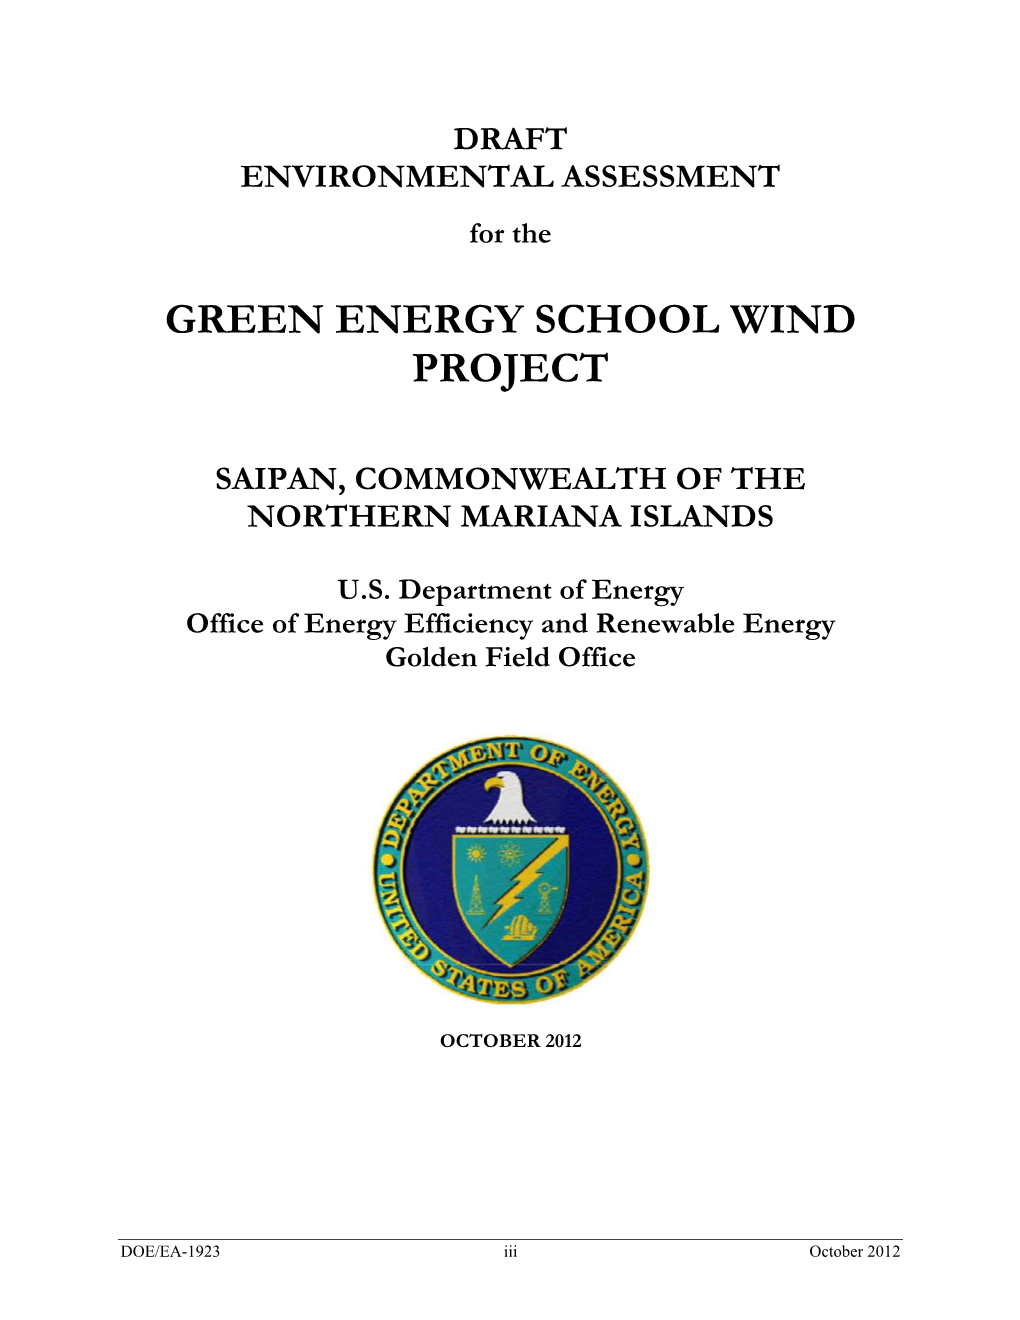 Green Energy School Wind Project